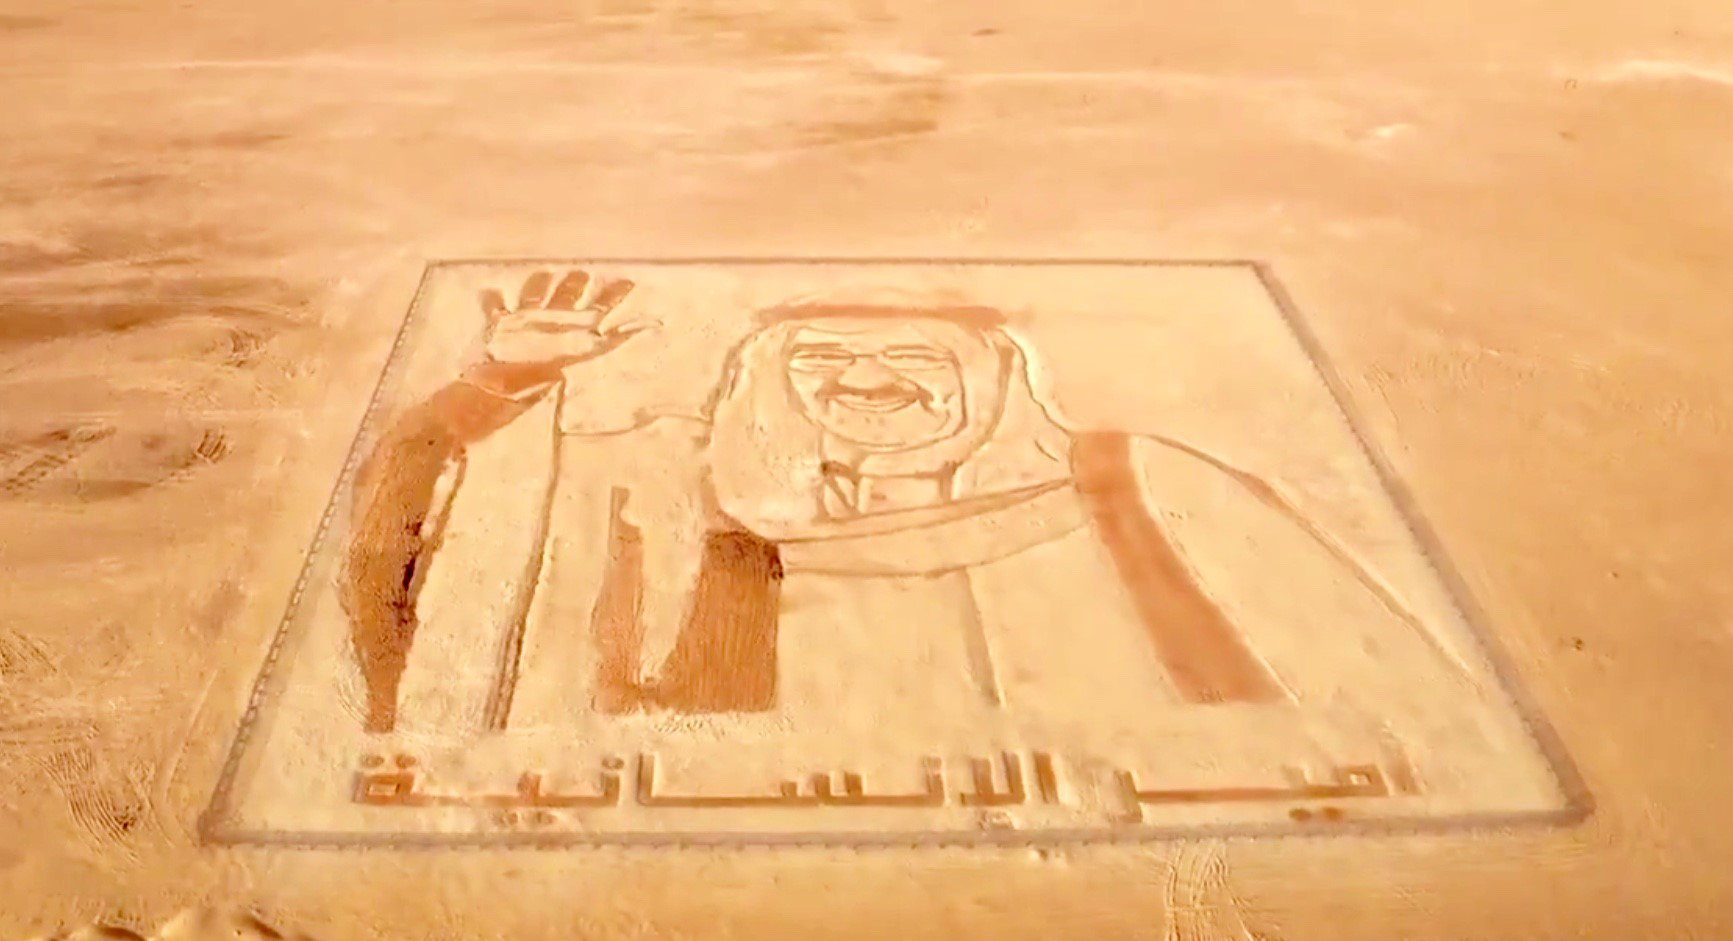 اللوحة الرملية الأكبر في في العالم والتي تحمل صورة سمو أمير البلاد الشيخ صباح الأحمد الجابر الصباح والتي تم رسمها في دبي